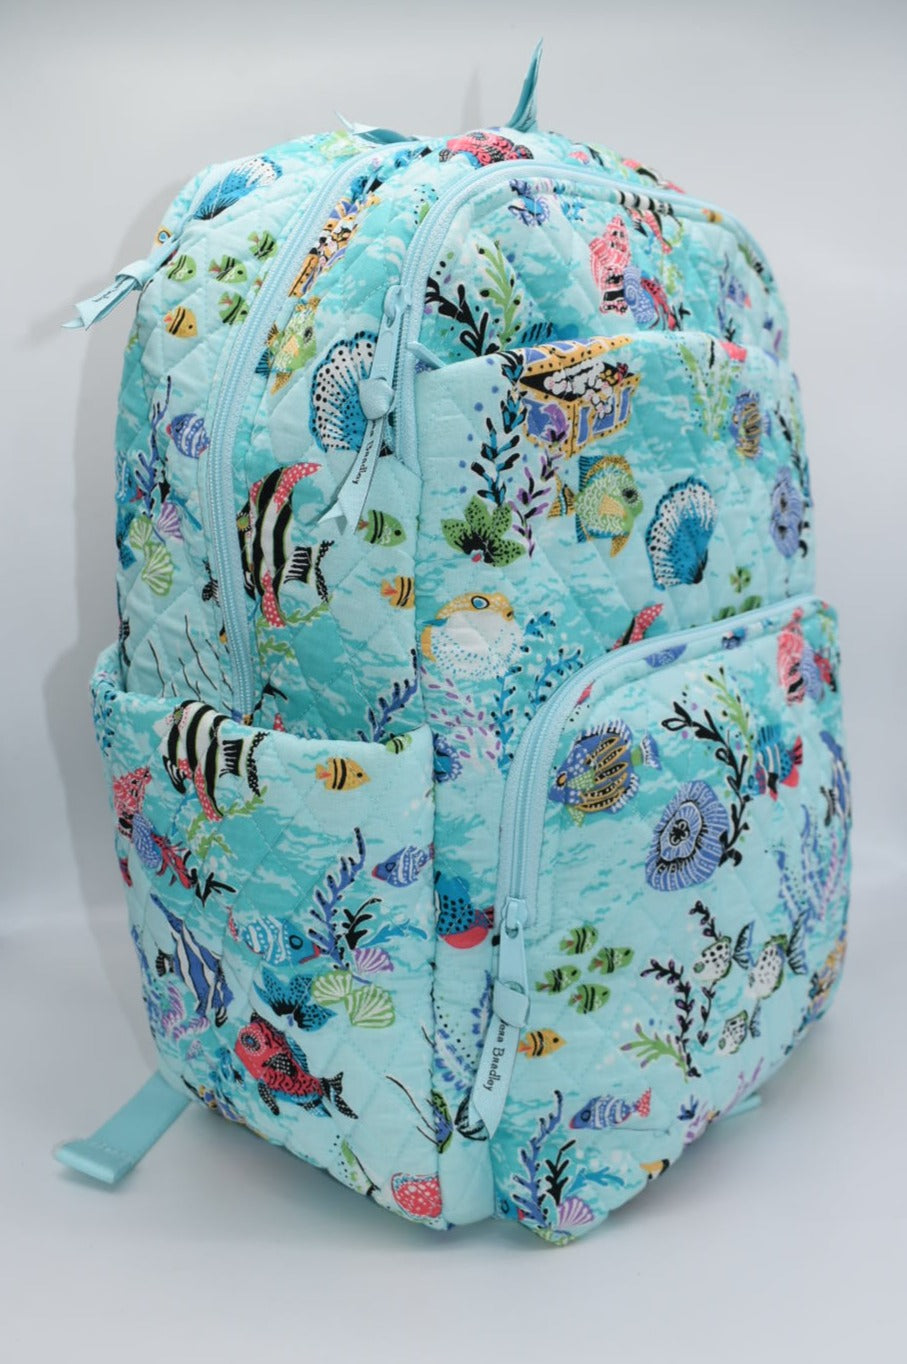 Vera Bradley Large Essential Backpack in "Antilles Treasure" Pattern